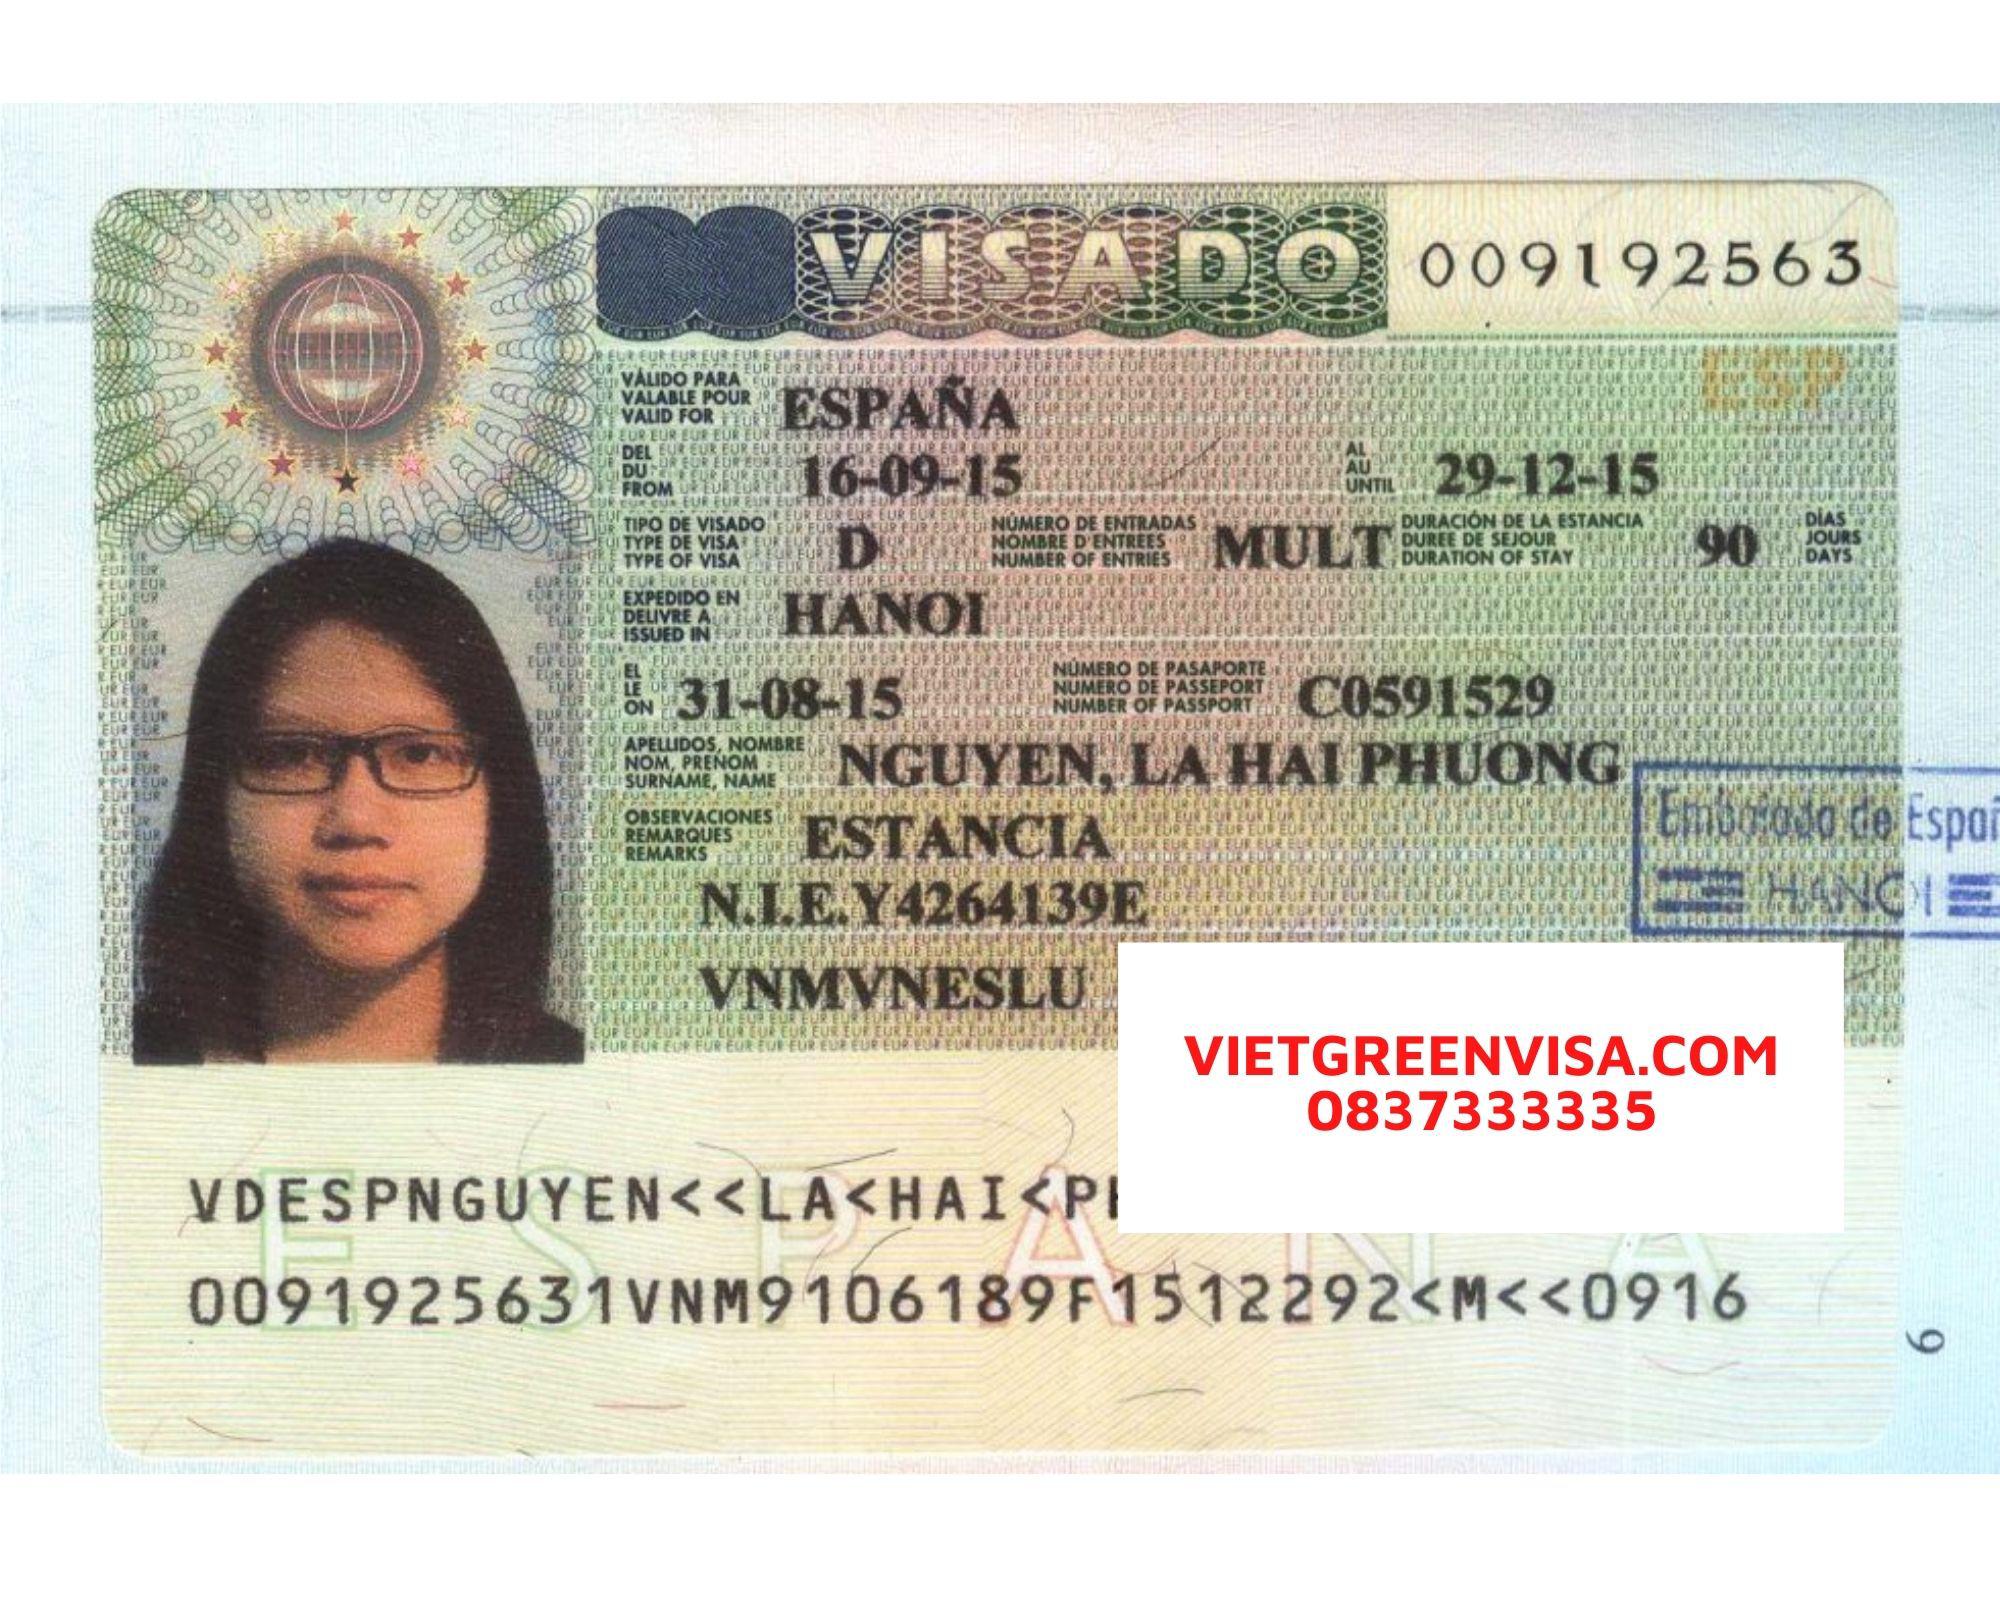 Dịch vụ xin visa công tác Tây Ban Nha cho người nước ngoài